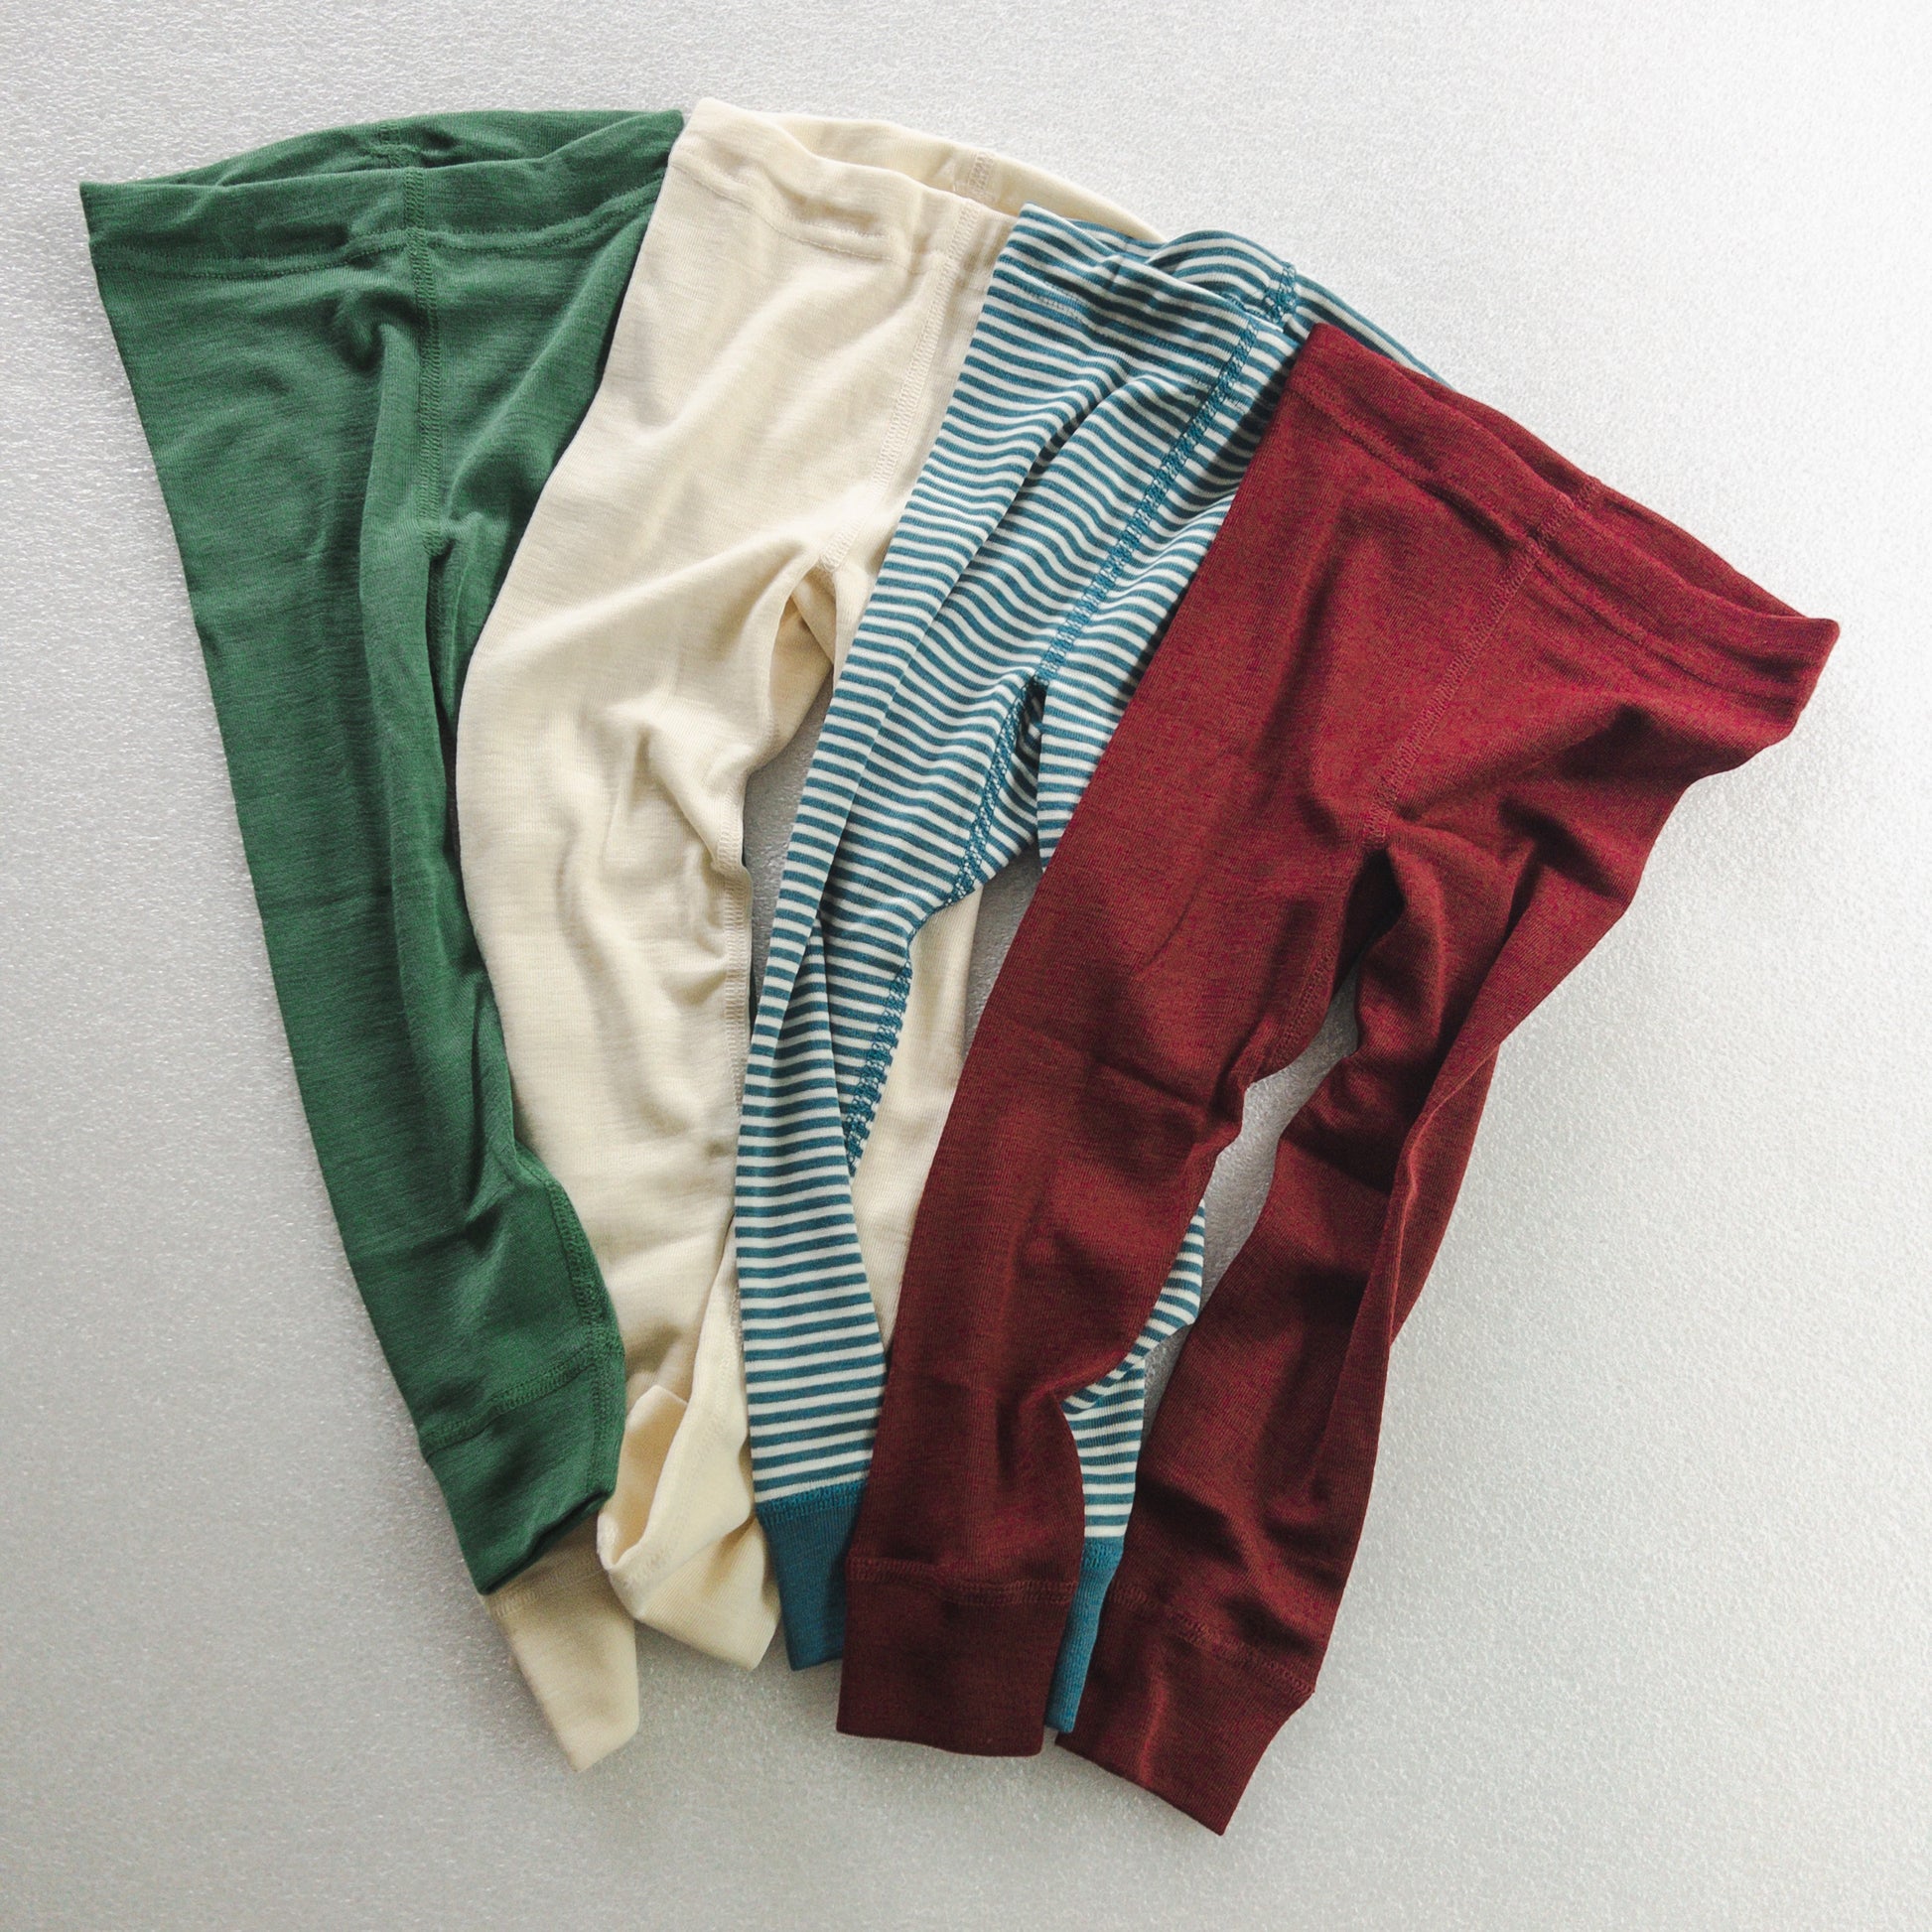 HOCOSA Demeter wool/silk baby long leggings undergarments